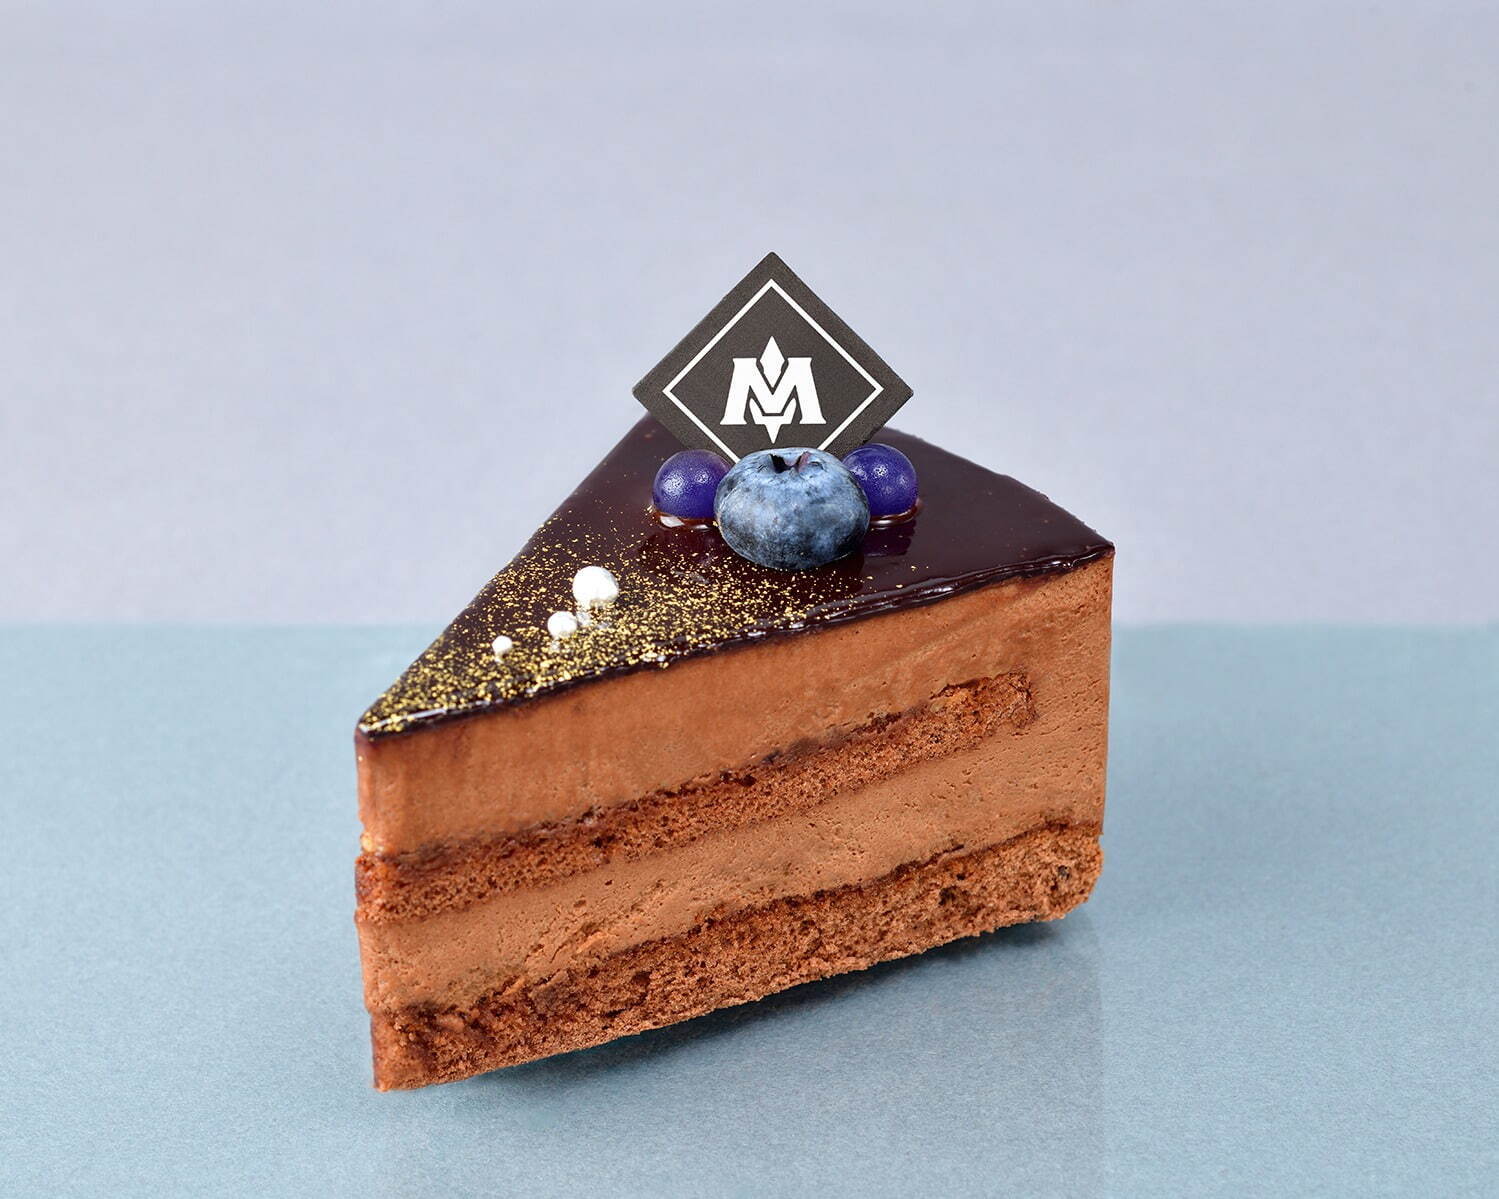 「メタナイトの気高きチョコレートケーキ」842円